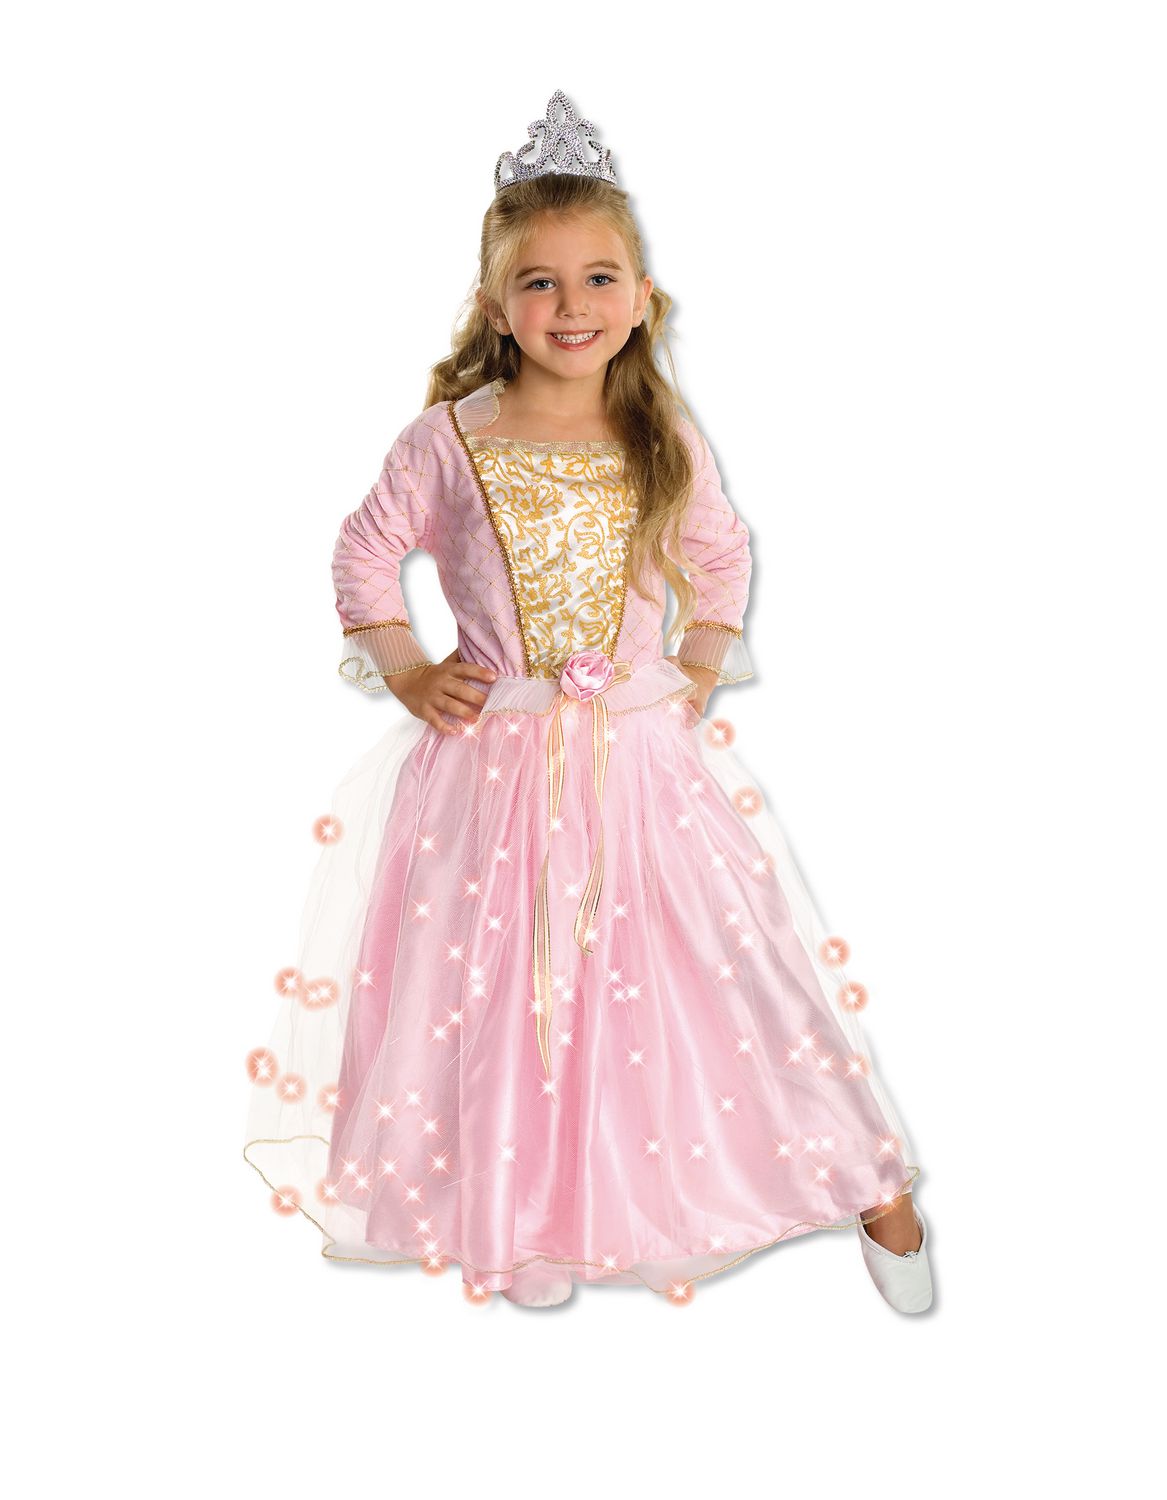 ReliBeauty Fille Robe de Princesse avec Paillettes Manches Longues Costume d’Halloween/Noël déguisement pour Enfants Dress up Bleu Clair